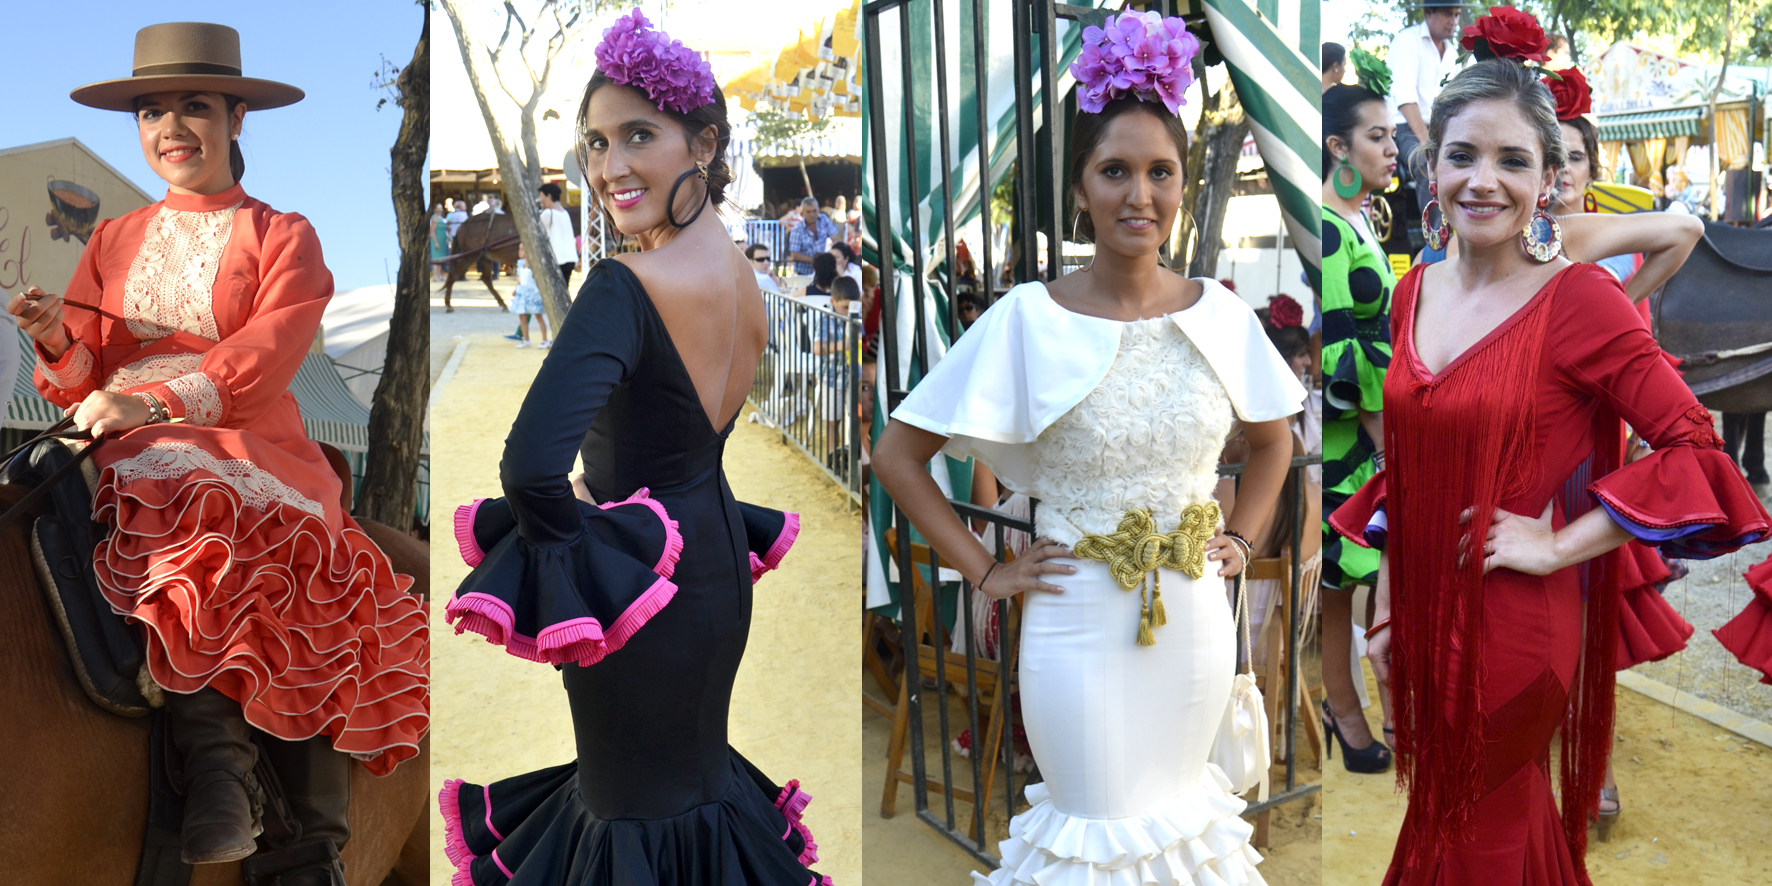 Flamencas en la Feria de Lebrija 2014